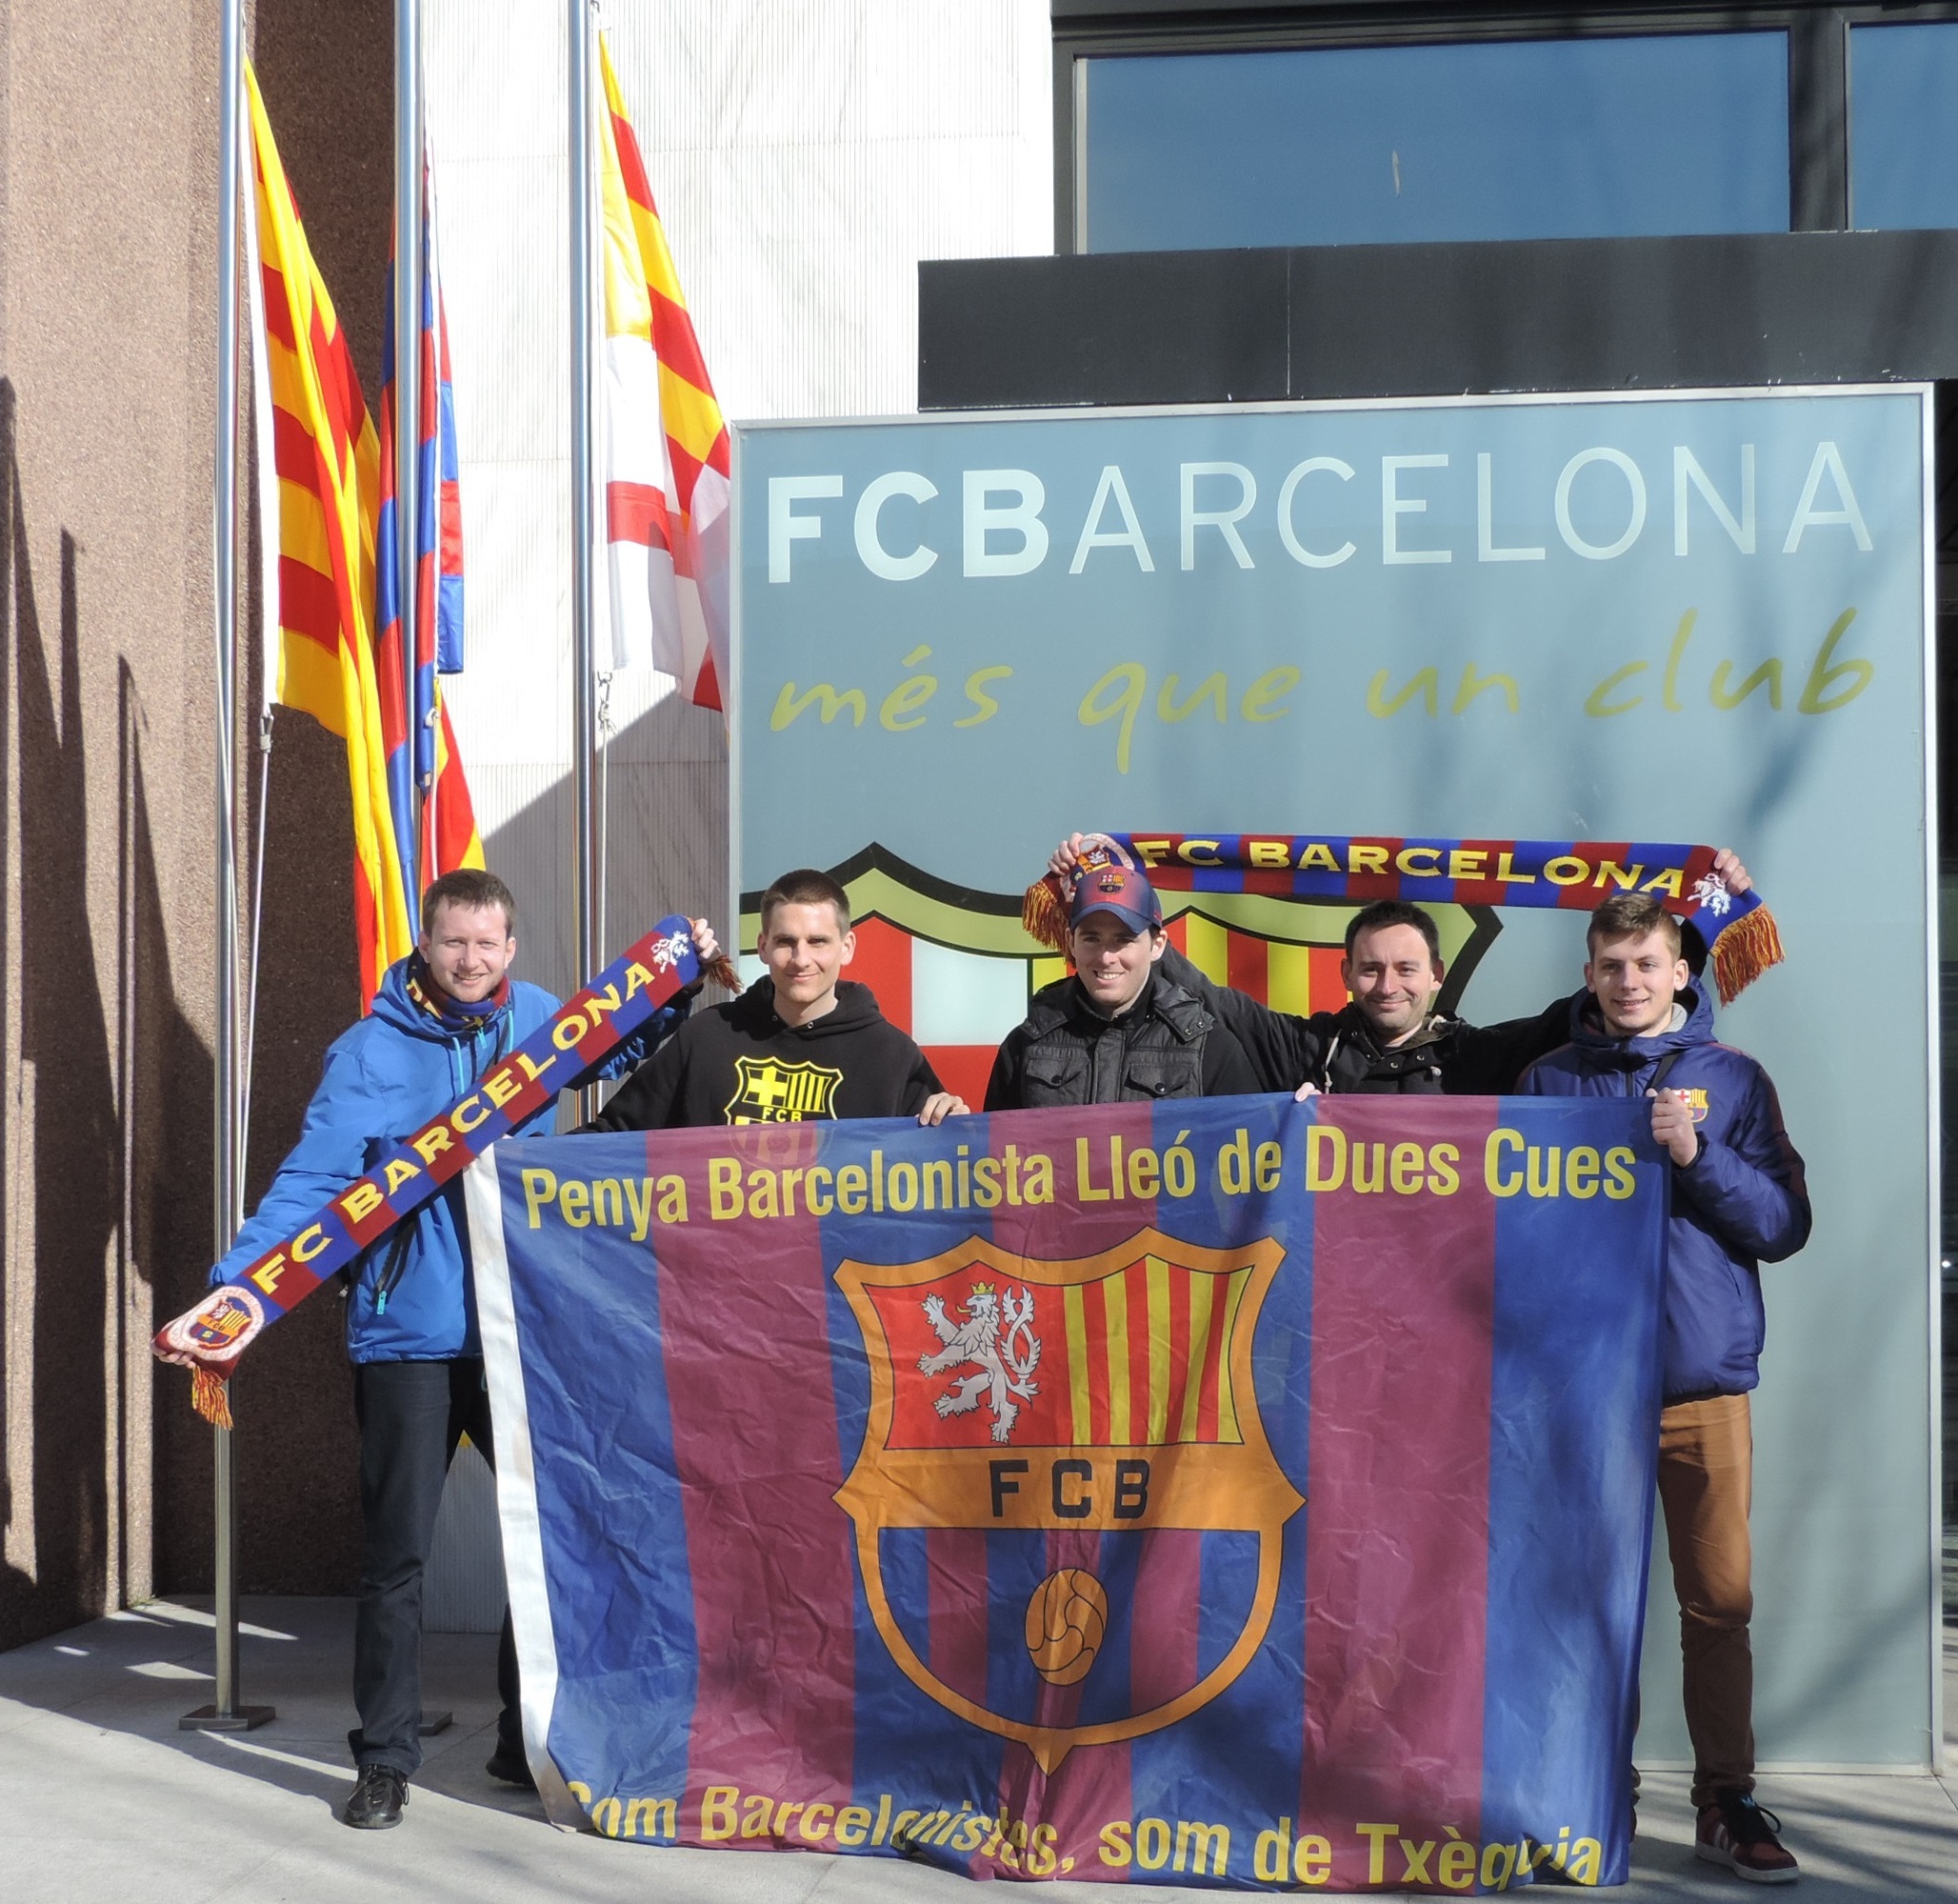 Galerie Barcelona 2015 - Barça vs Villarreal - FCBarcelona.cz